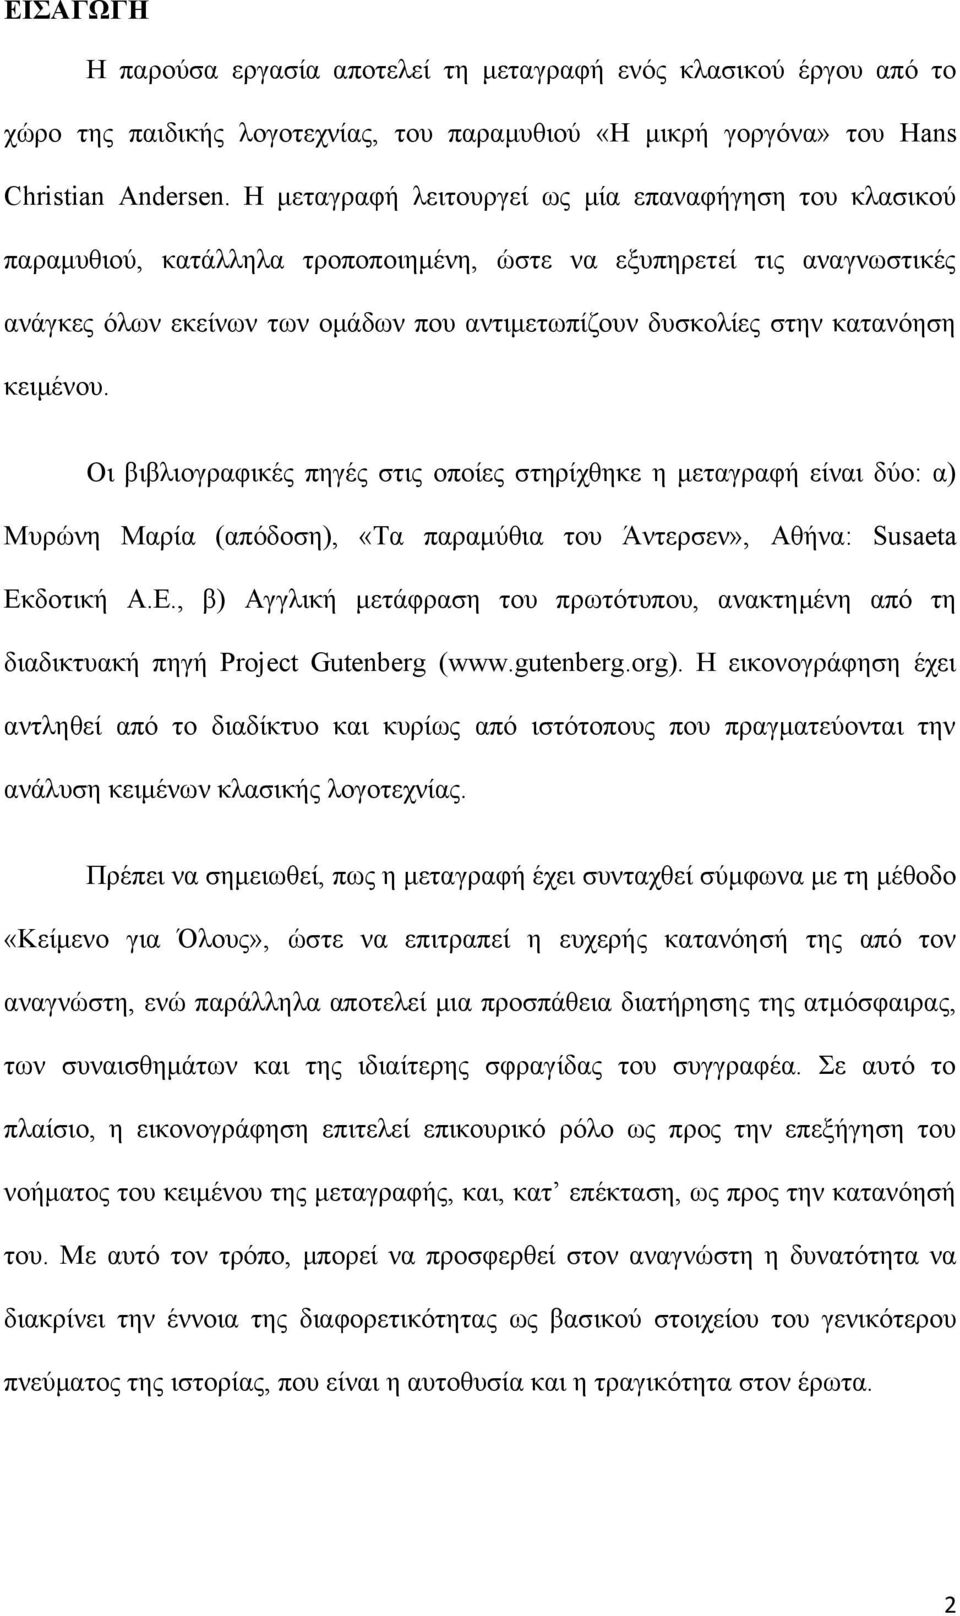 κατανόηση κειμένου. Οι βιβλιογραφικές πηγές στις οποίες στηρίχθηκε η μεταγραφή είναι δύο: α) Μυρώνη Μαρία (απόδοση), «Τα παραμύθια του Άντερσεν», Αθήνα: Susaeta Εκ